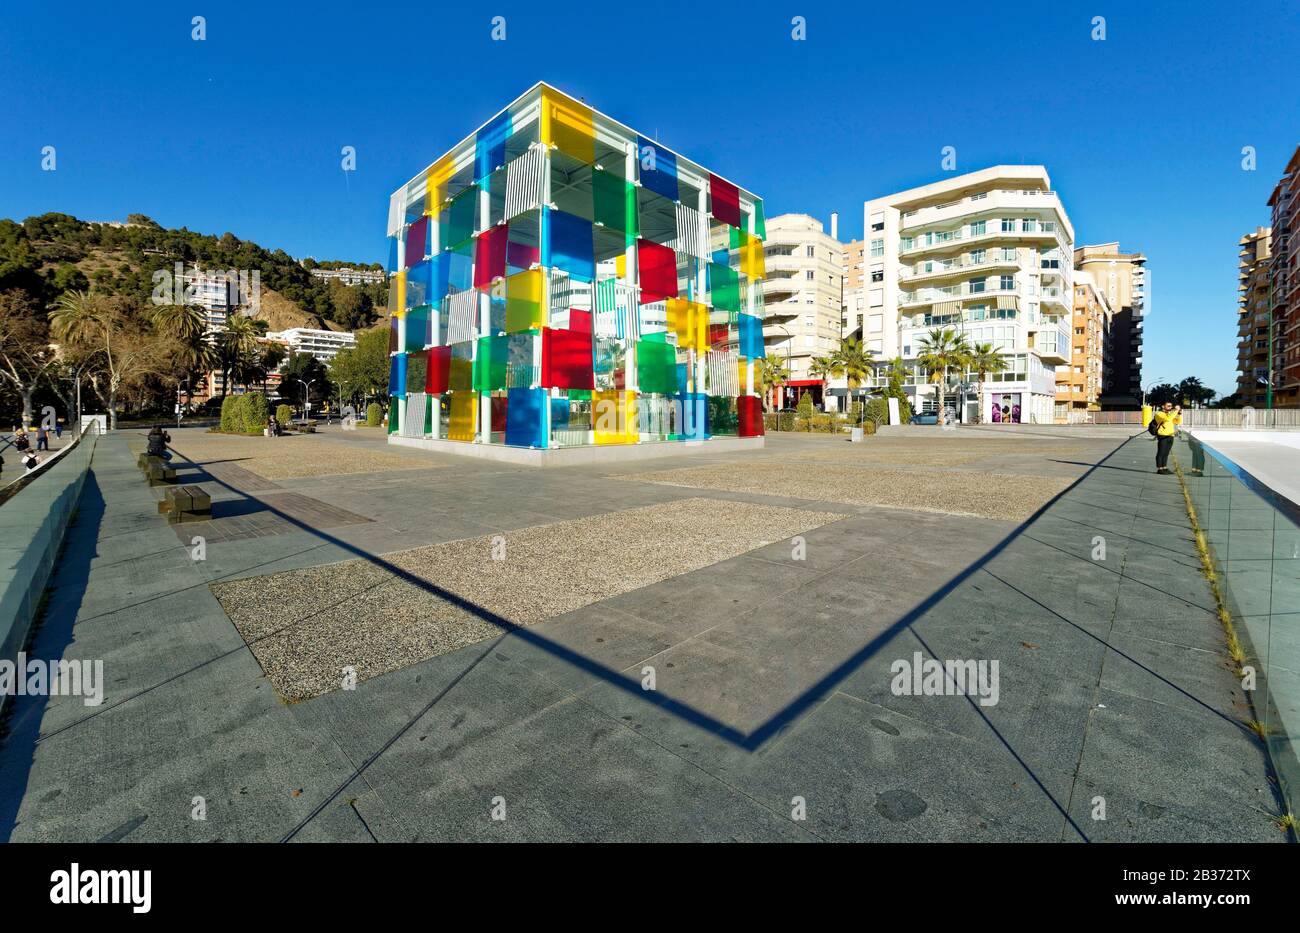 Espagne, Andalousie, Costa del sol, Malaga, le bord de mer sur le port, Le Centre d'art Pompidou le Cube par Daniel Buren Banque D'Images